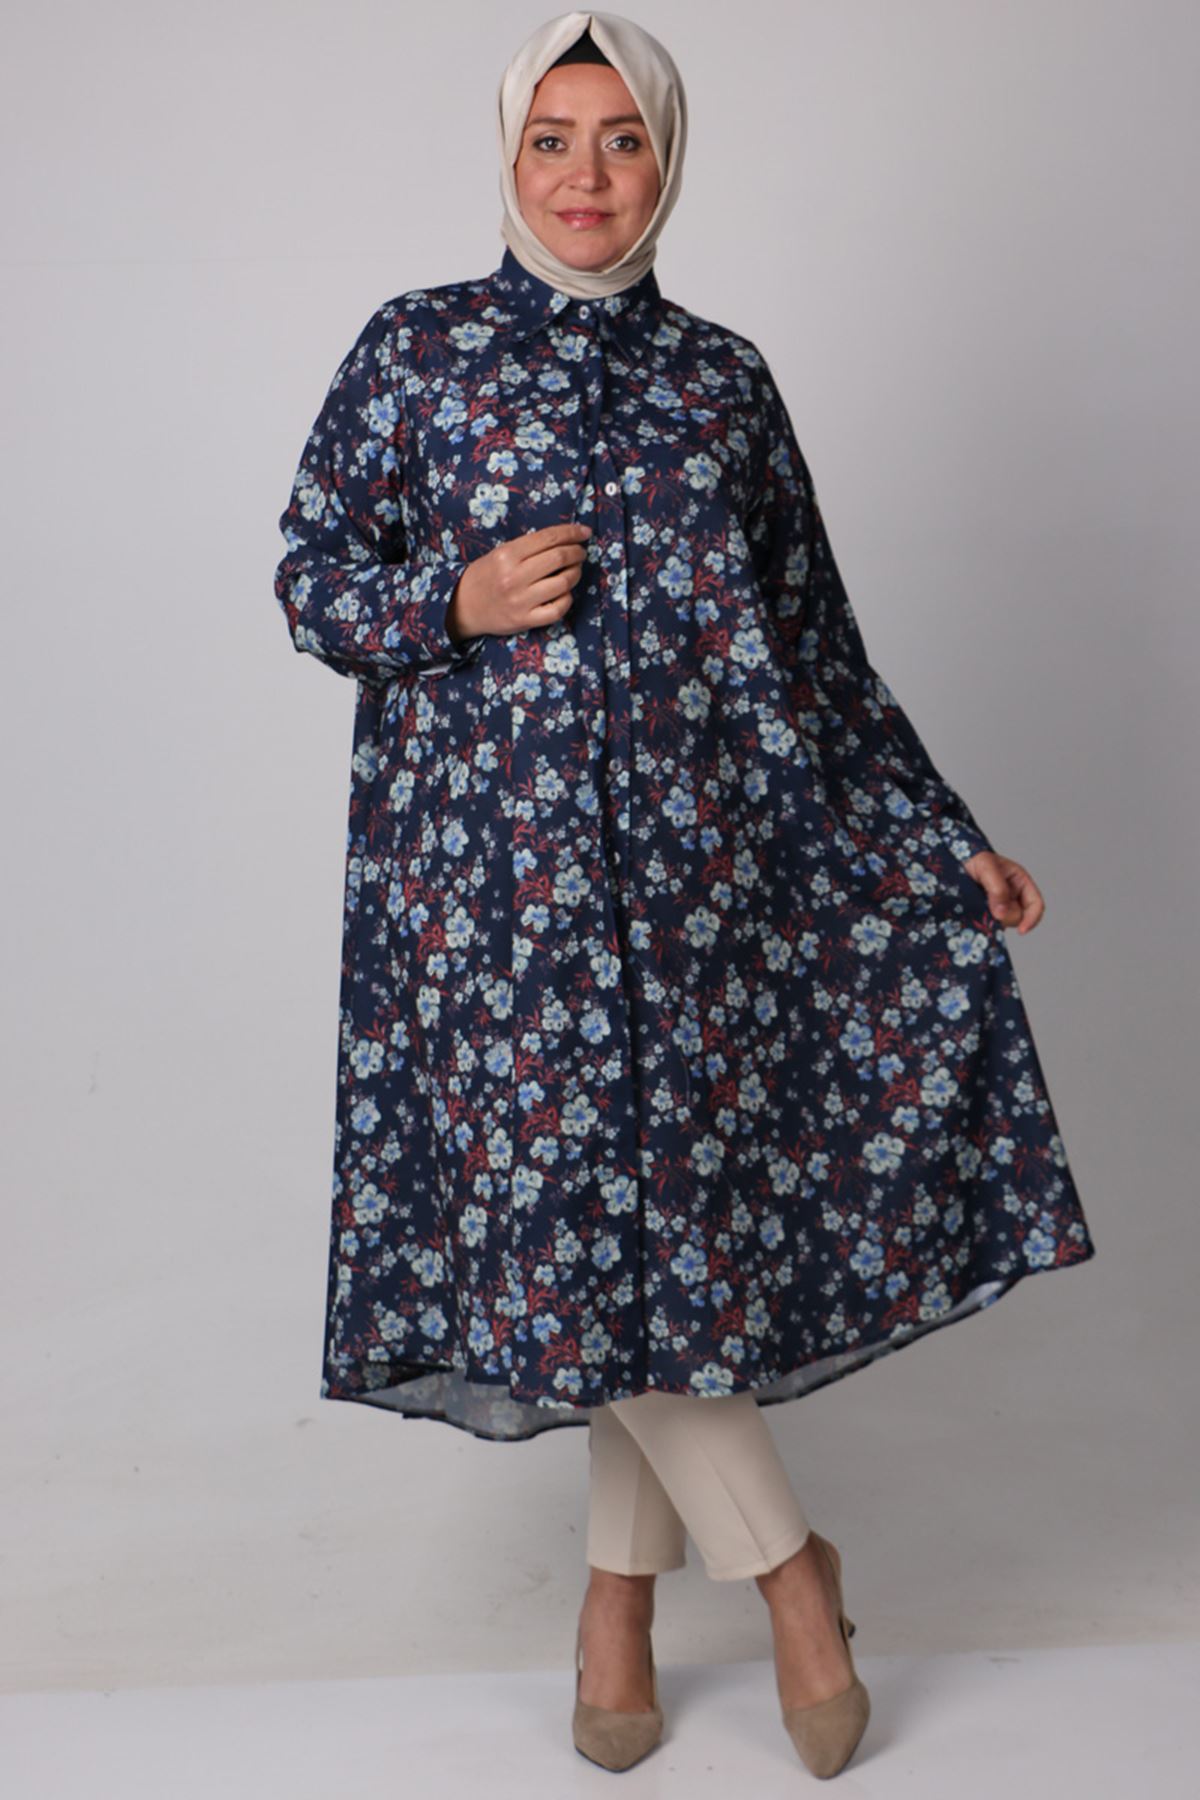 38047 Large Size Patterned Mevlana Jesica Shirt- Floral Pattern Navy Blue